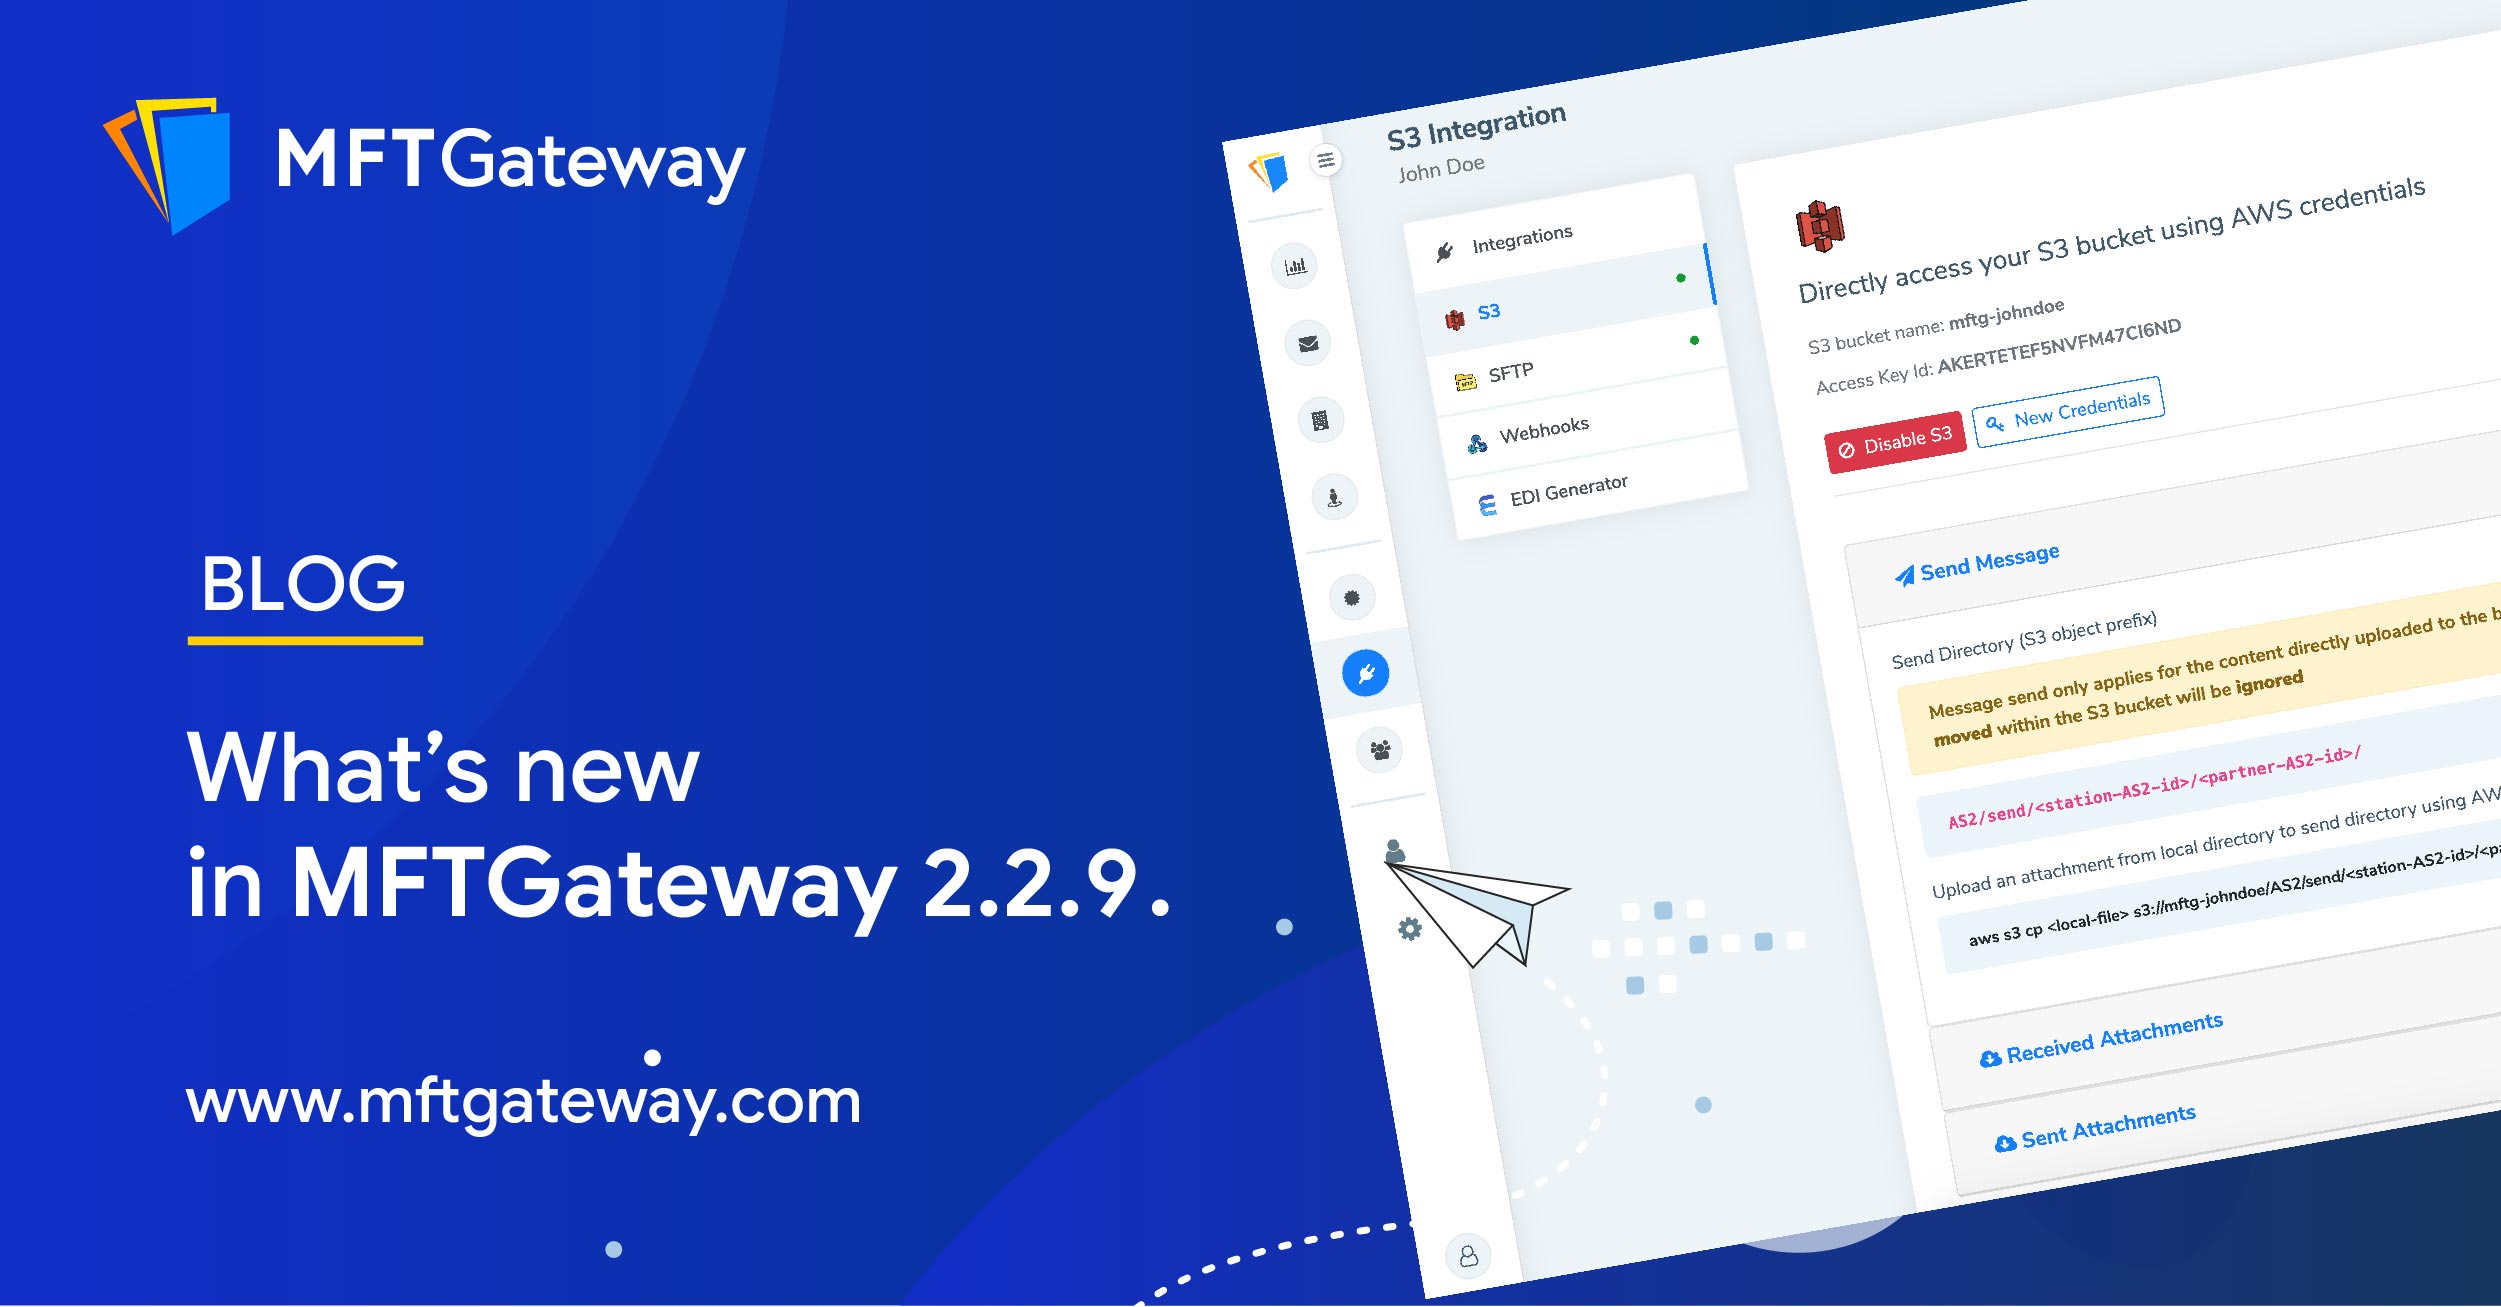 MFT Gateway 2.2.9 Release